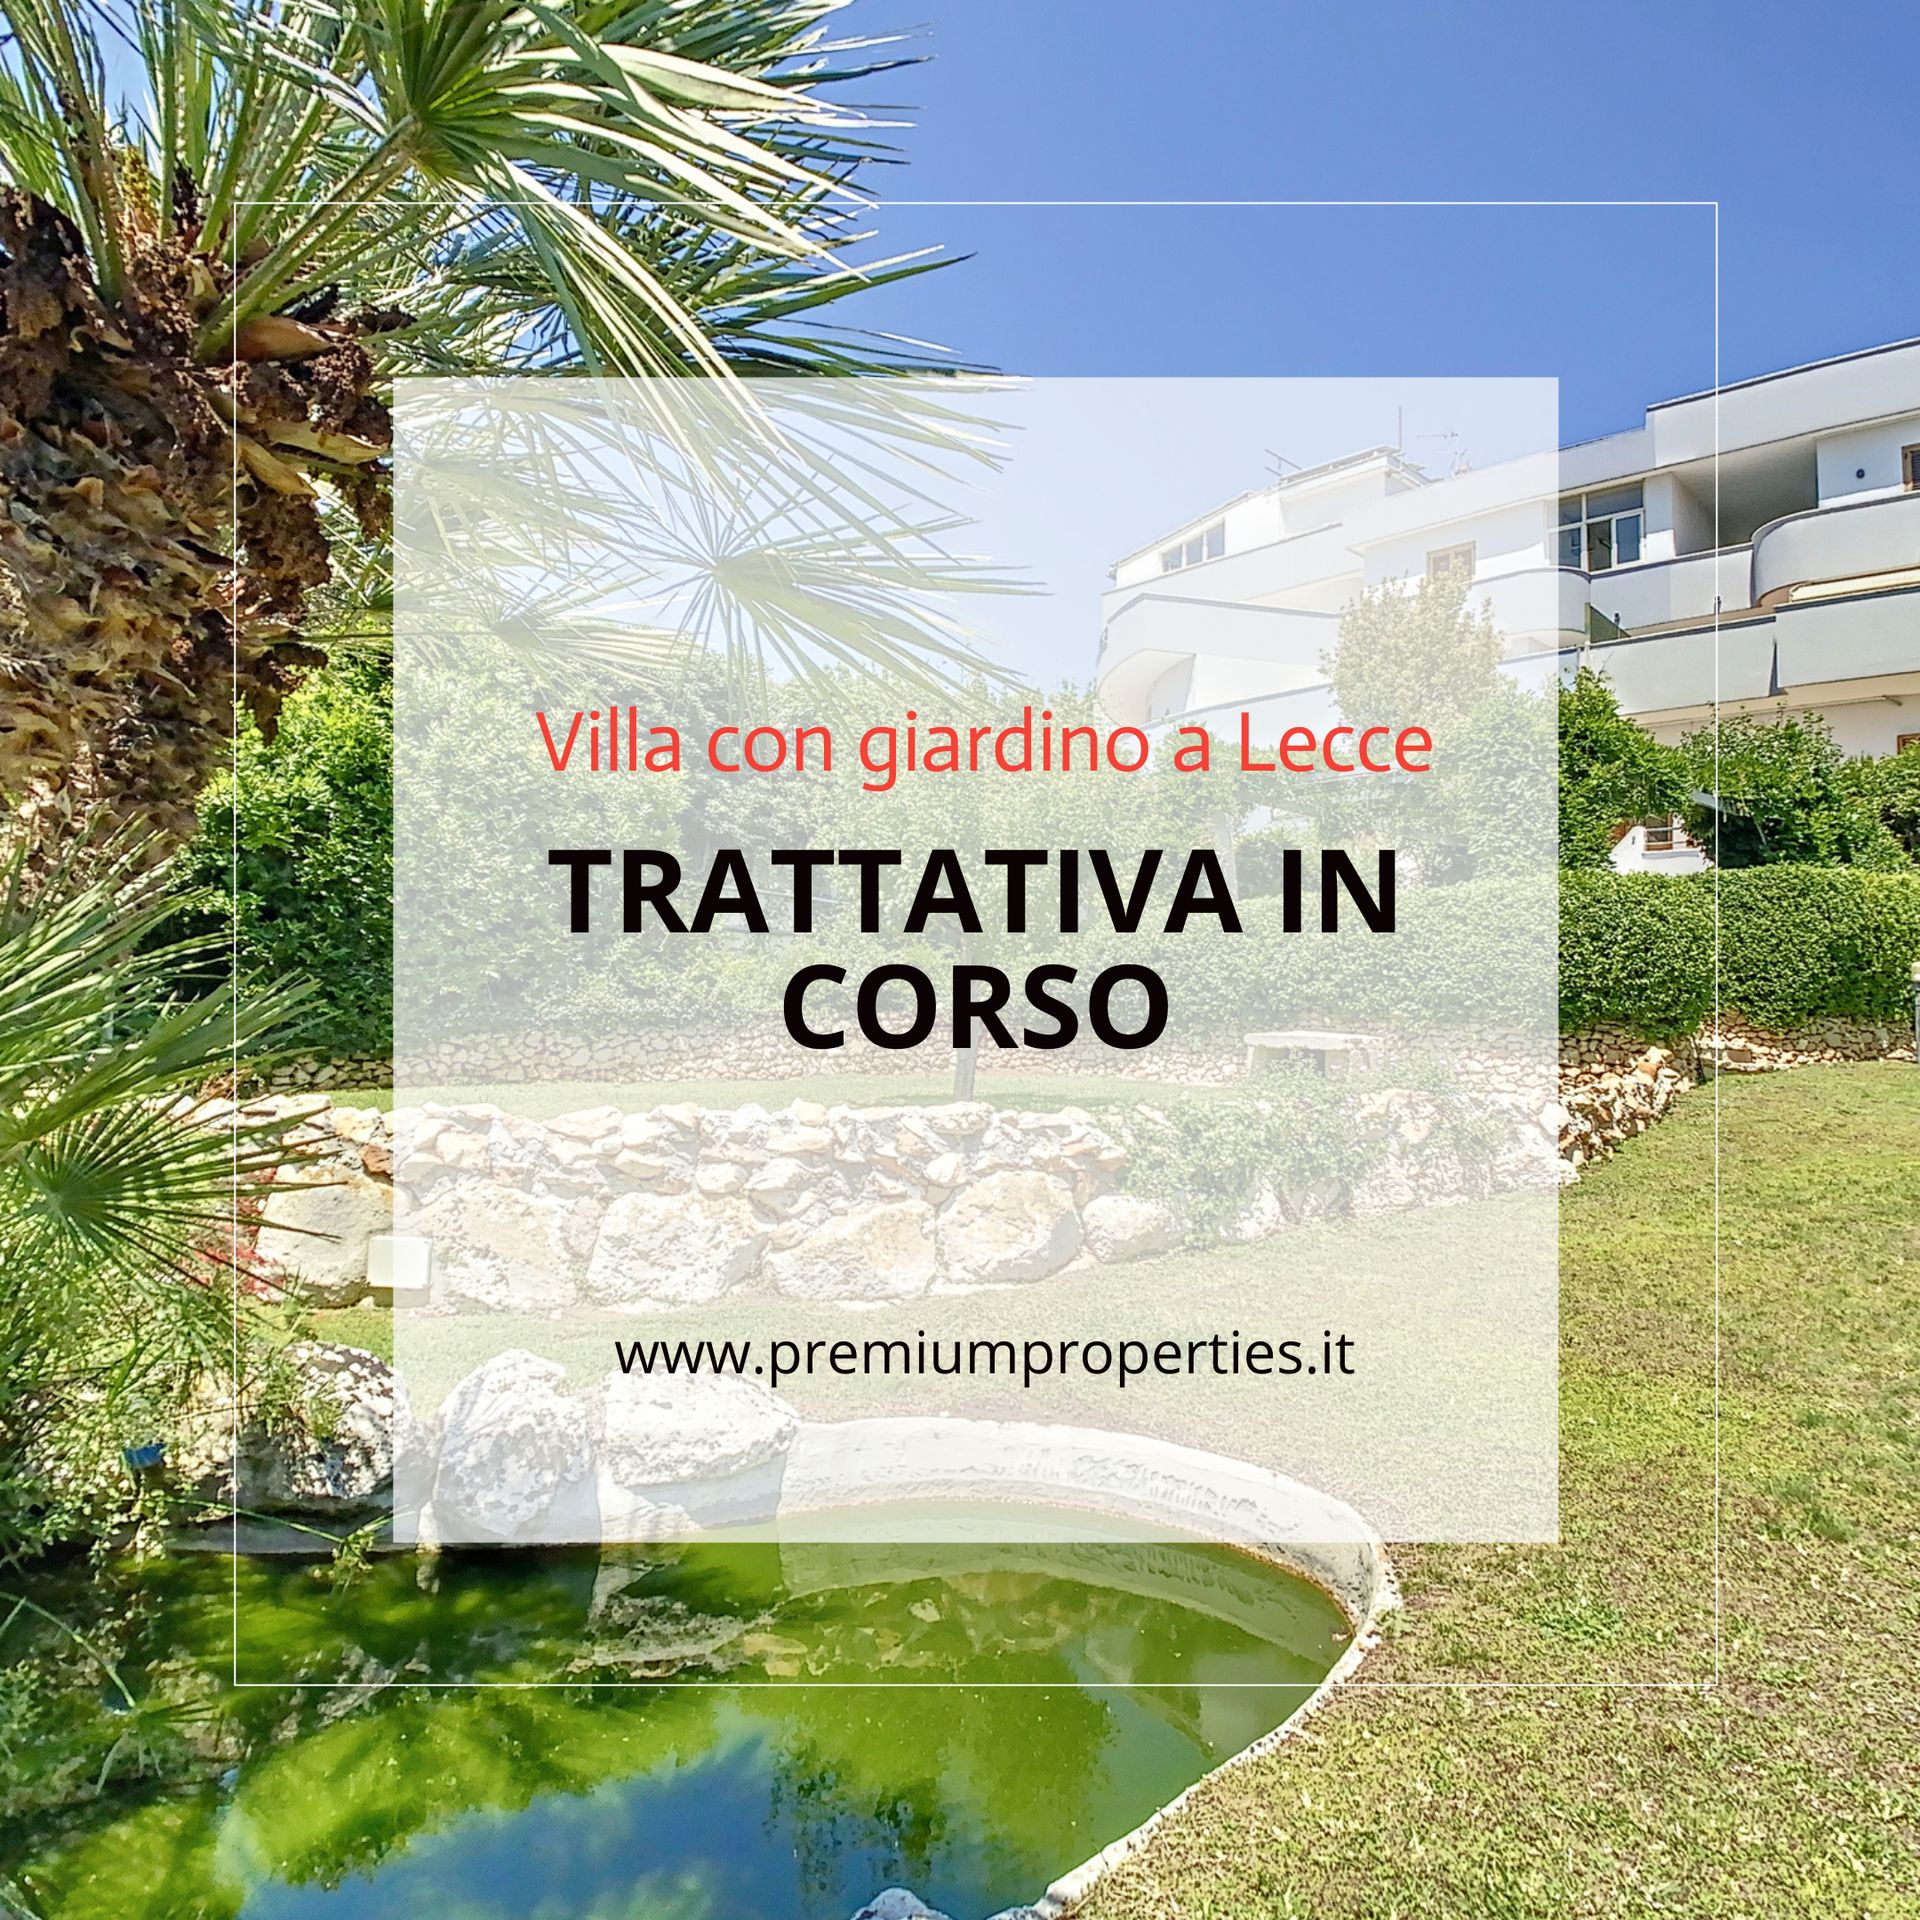 Se vende villa in ciudad Lecce Puglia